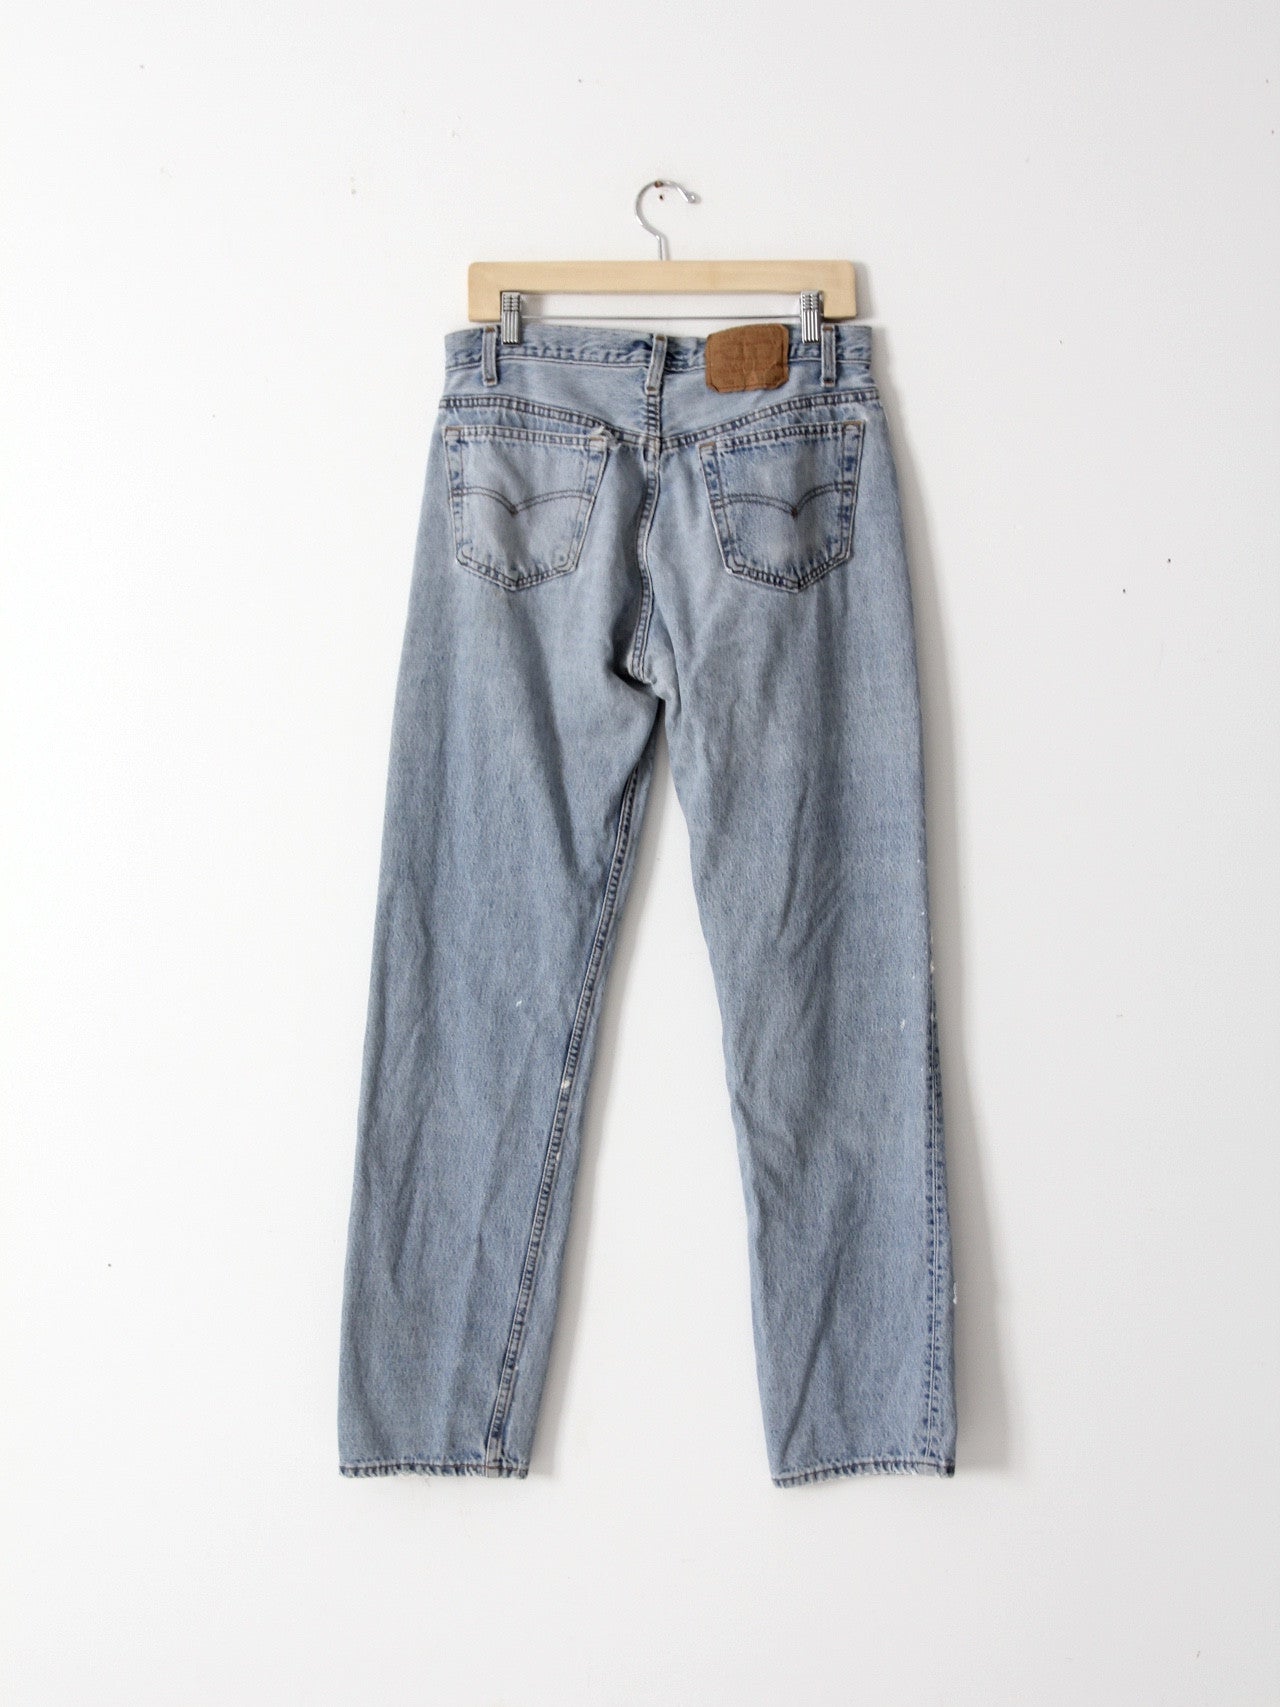 zwak Gastheer van Genre vintage Levis 501 jeans, 33 x 33 – 86 Vintage